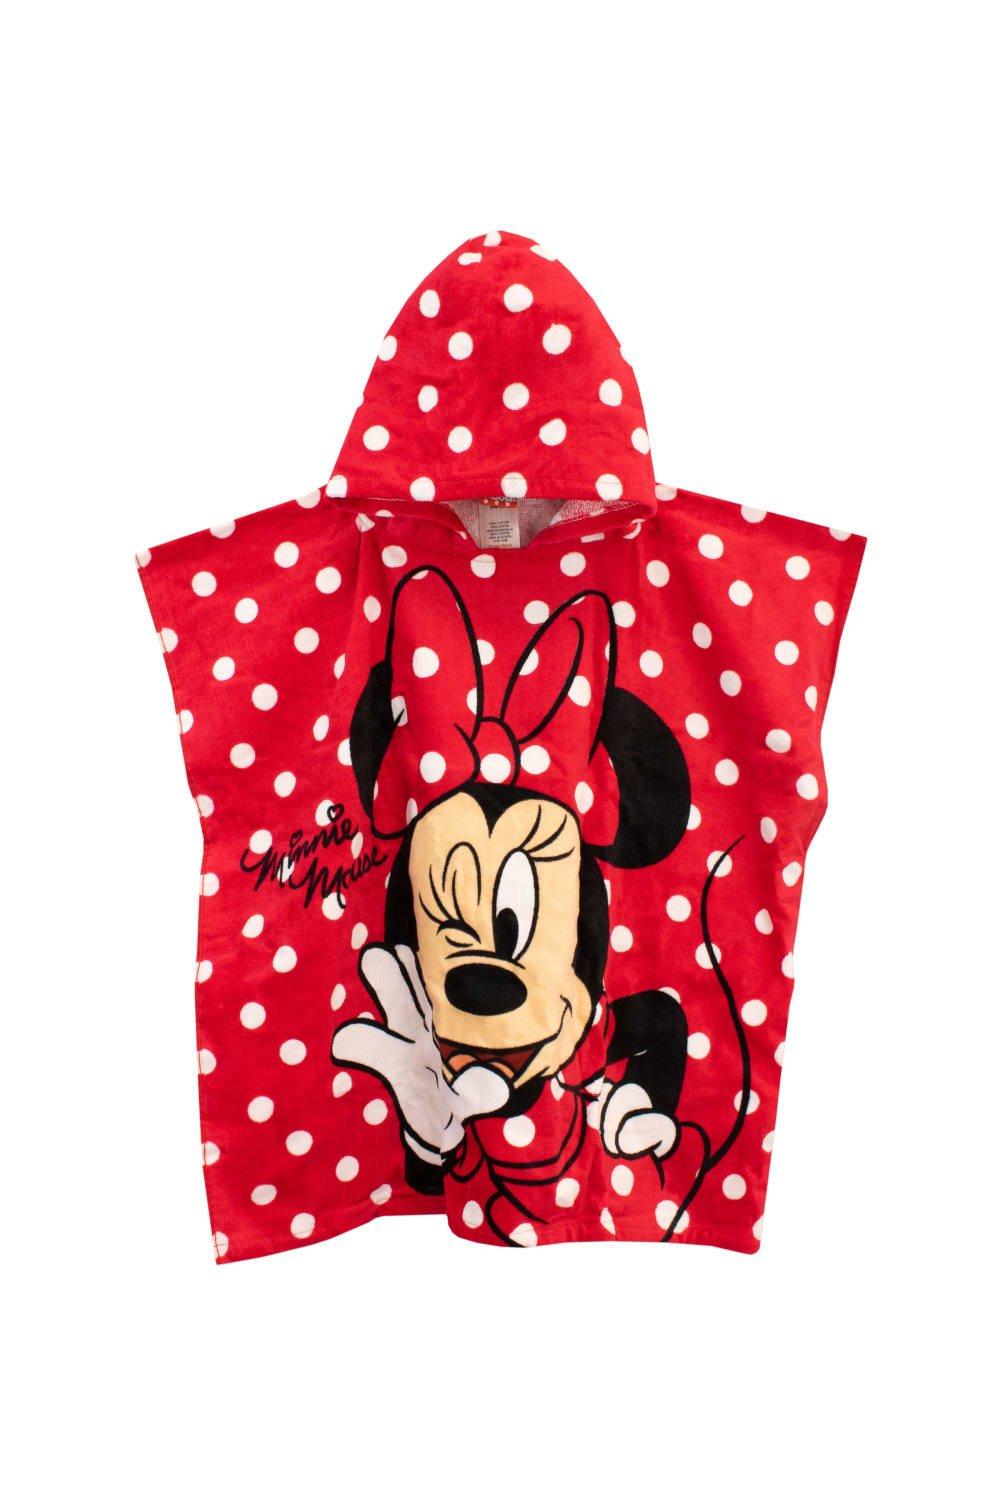 Полотенце-пончо с капюшоном Минни Маус Disney, красный полотенца крошка я полотенце с капюшоном 120х67